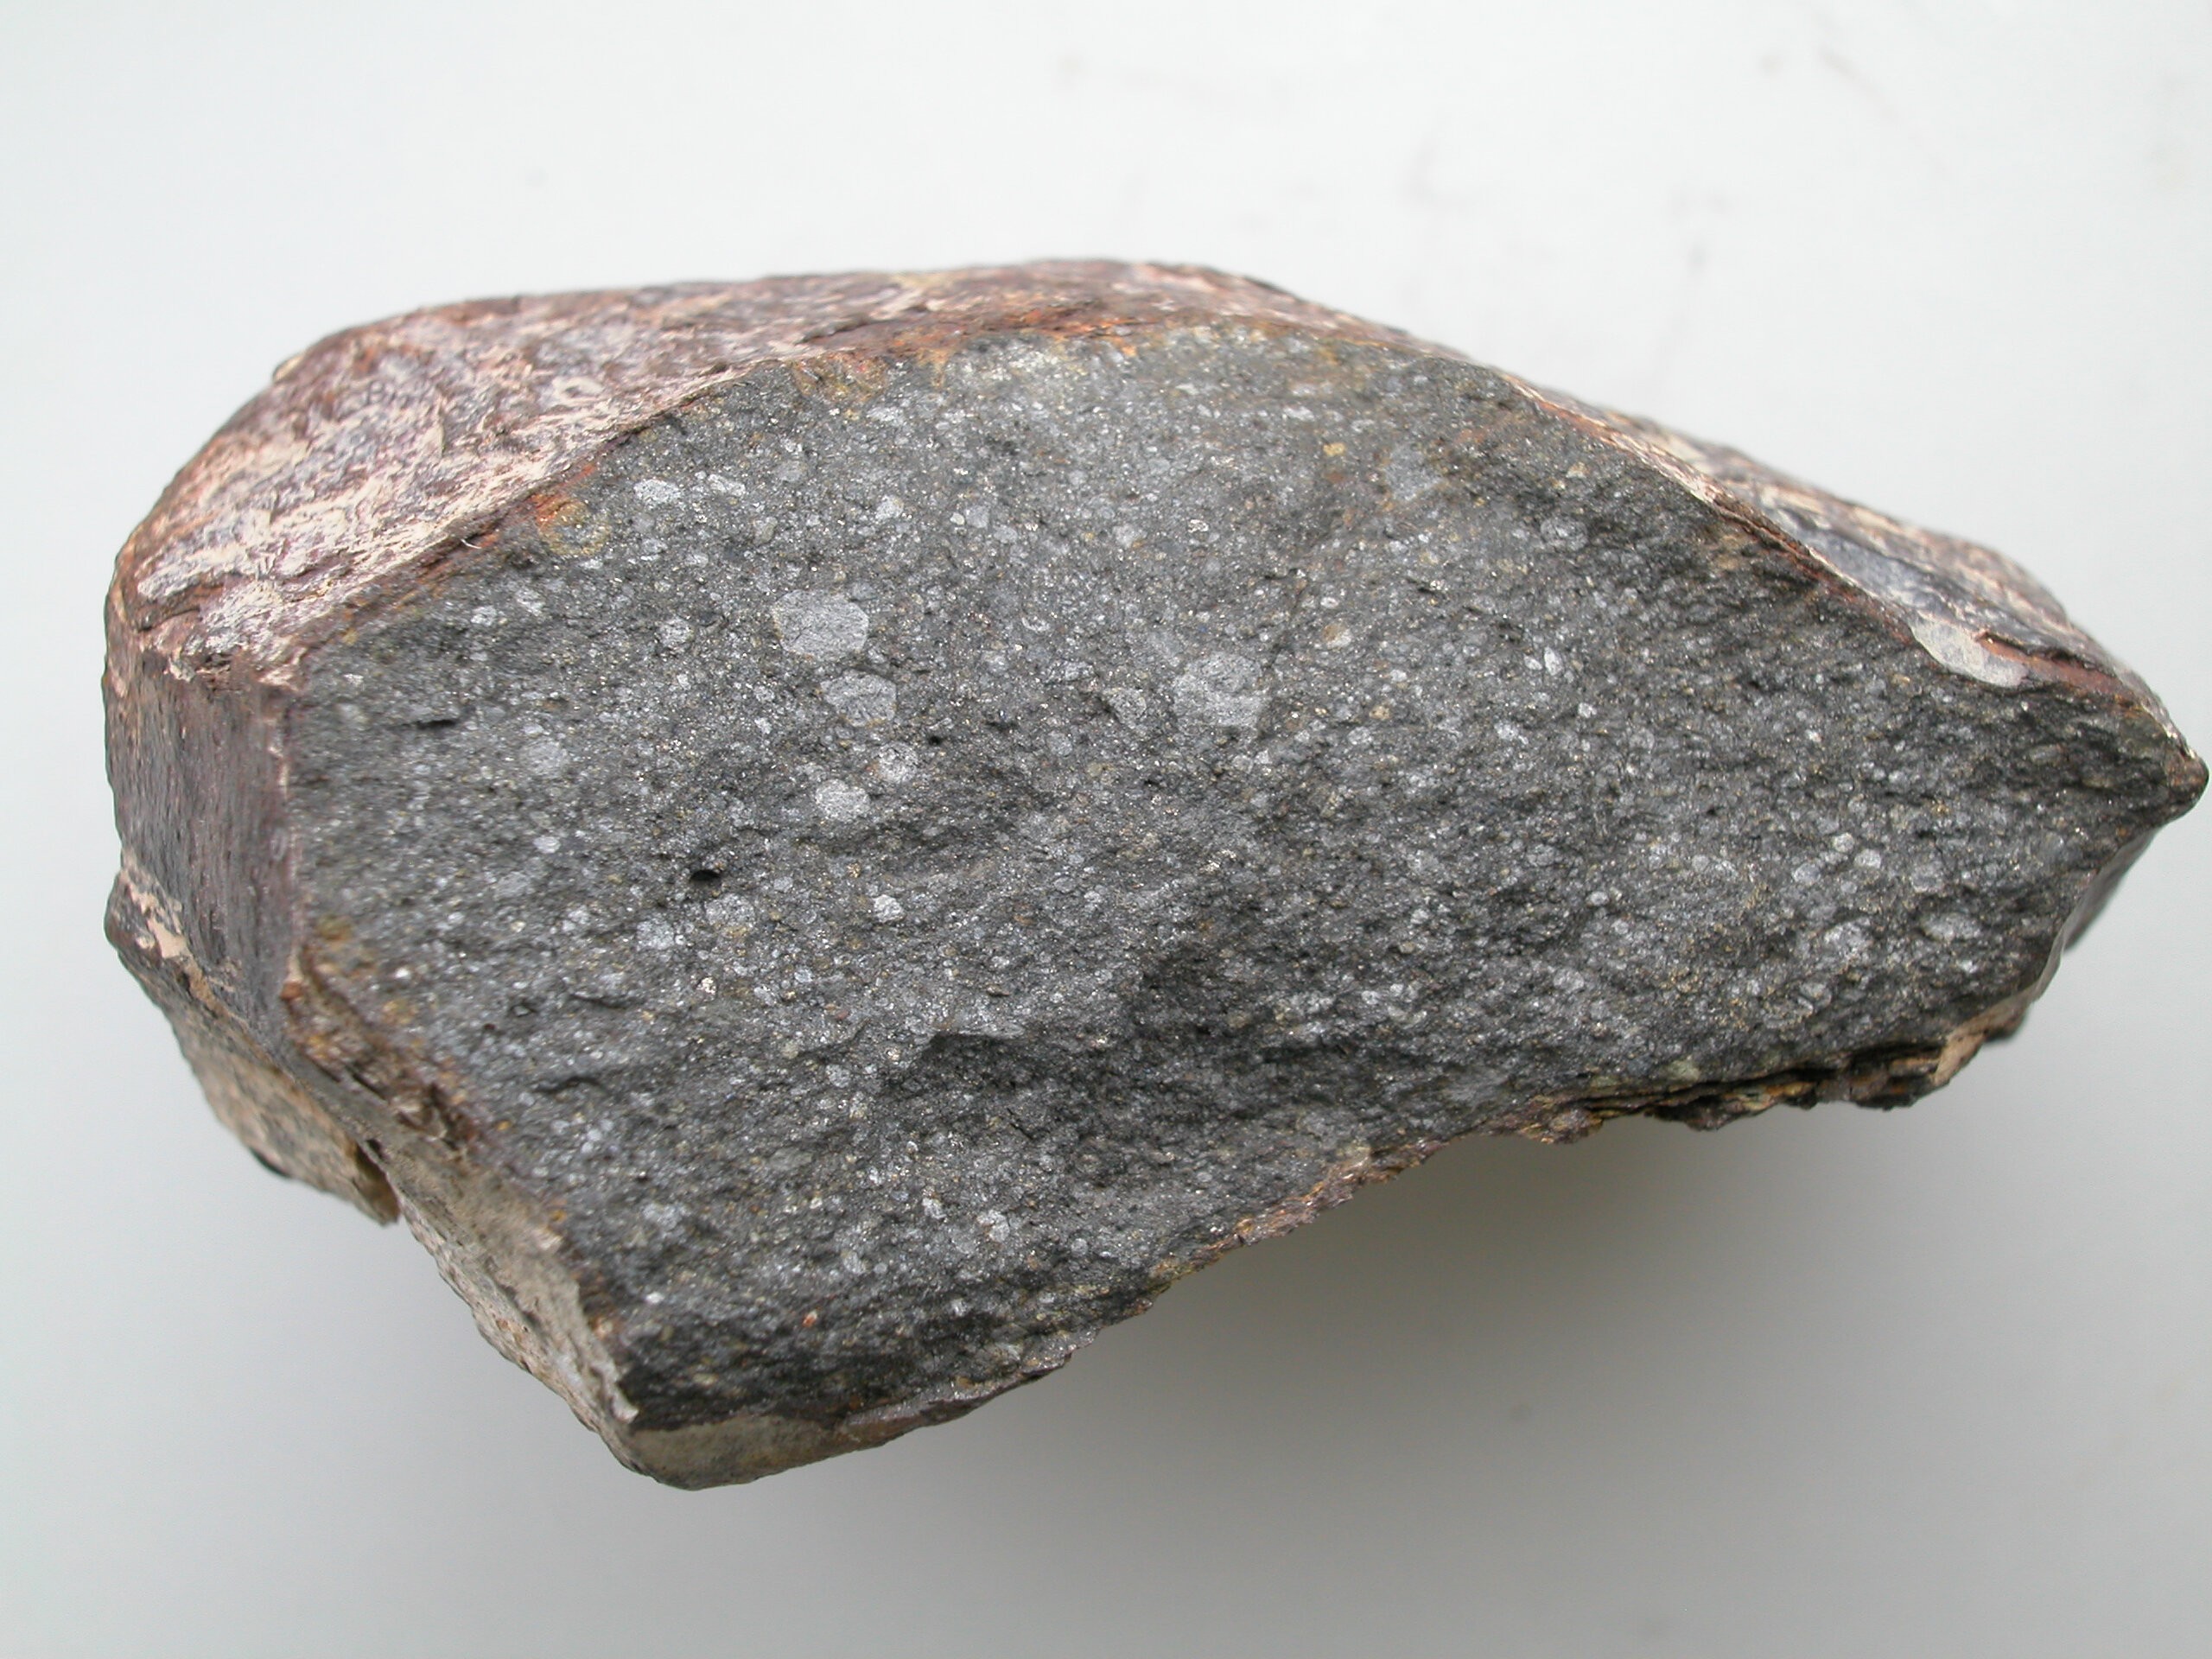 Meteorito sugere nova explicação para existência de água na Terra. Acima: pedaço do meteorito Sahara 97096, com cerca de 10 centímetros de comprimento e 0,5% de seu peso em água (Foto: L. Piani, Museum of Natural History in Paris)